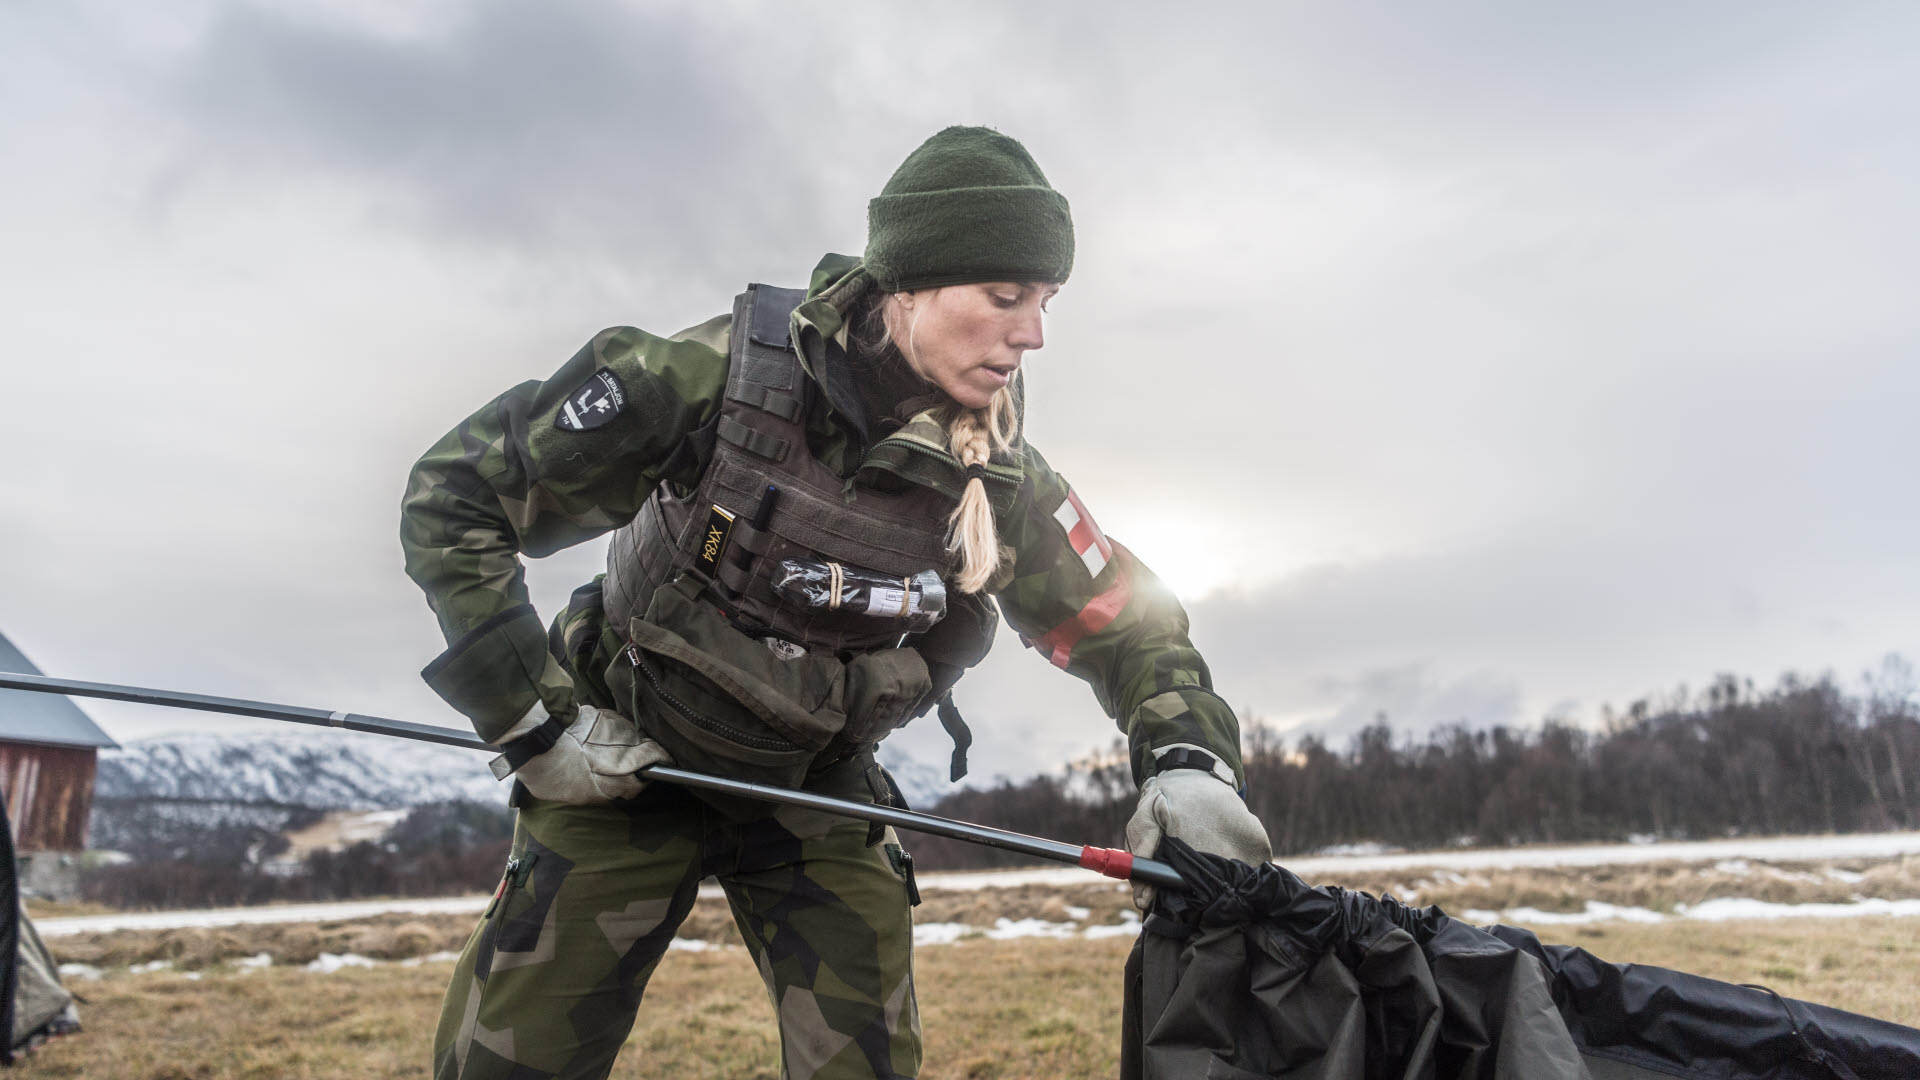 71:a bataljons sjukvårdsresurs förbereder samlingsplats för skadade. 

Sverige deltar i övningen Trident Juncture 18 med förband från samtliga stridskrafter för att öka förmågan att försvara Sverige. Syftet med det svenska deltagandet är även att stärka samarbeten med andra länder.